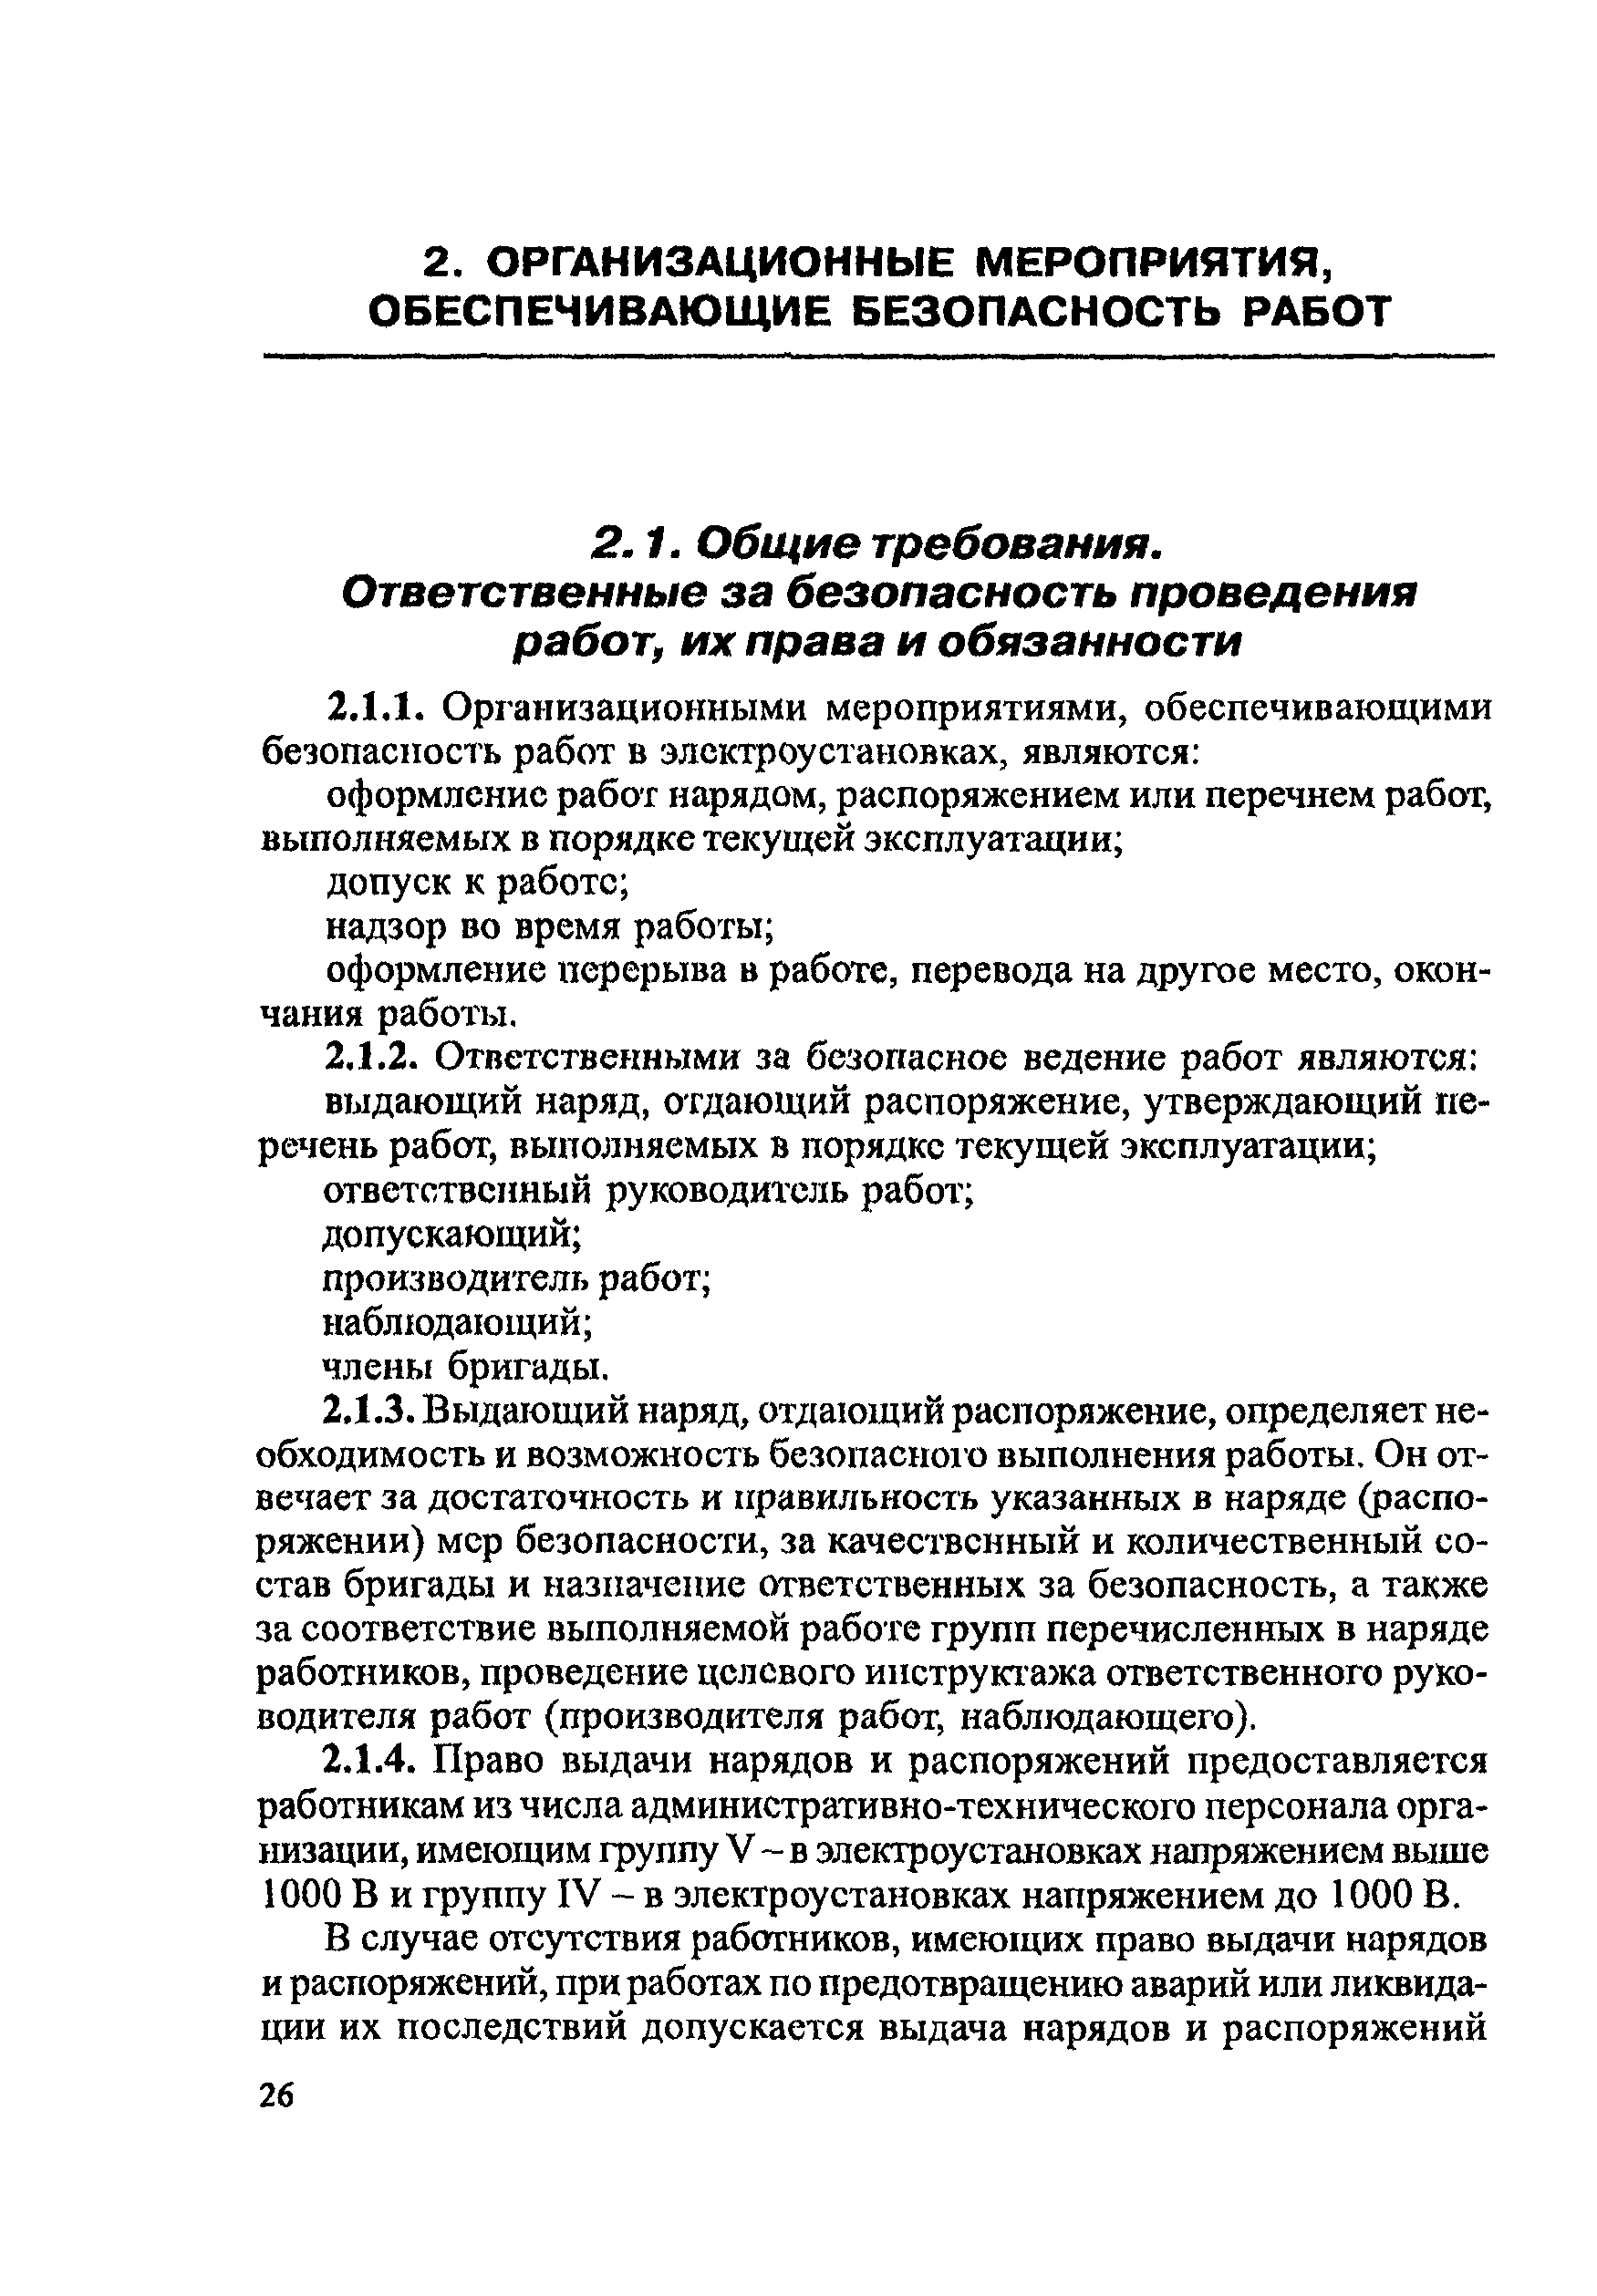 Пот рм 016 2001 скачать pdf